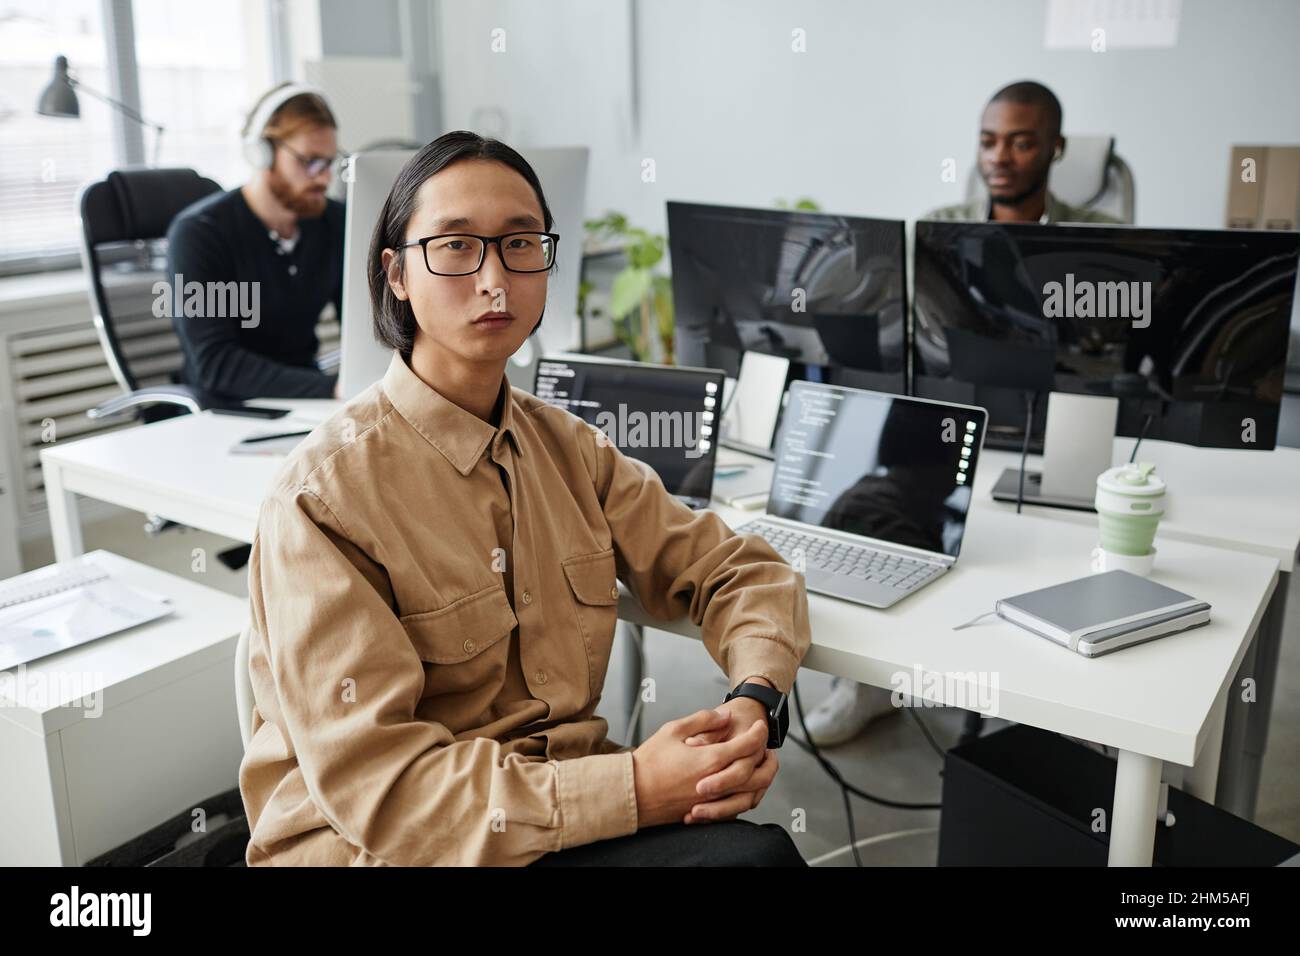 Jeune homme d'affaires asiatique sérieux en lunettes et vêtements décontractés assis près d'un bureau avec deux ordinateurs portables contre ses collègues Banque D'Images